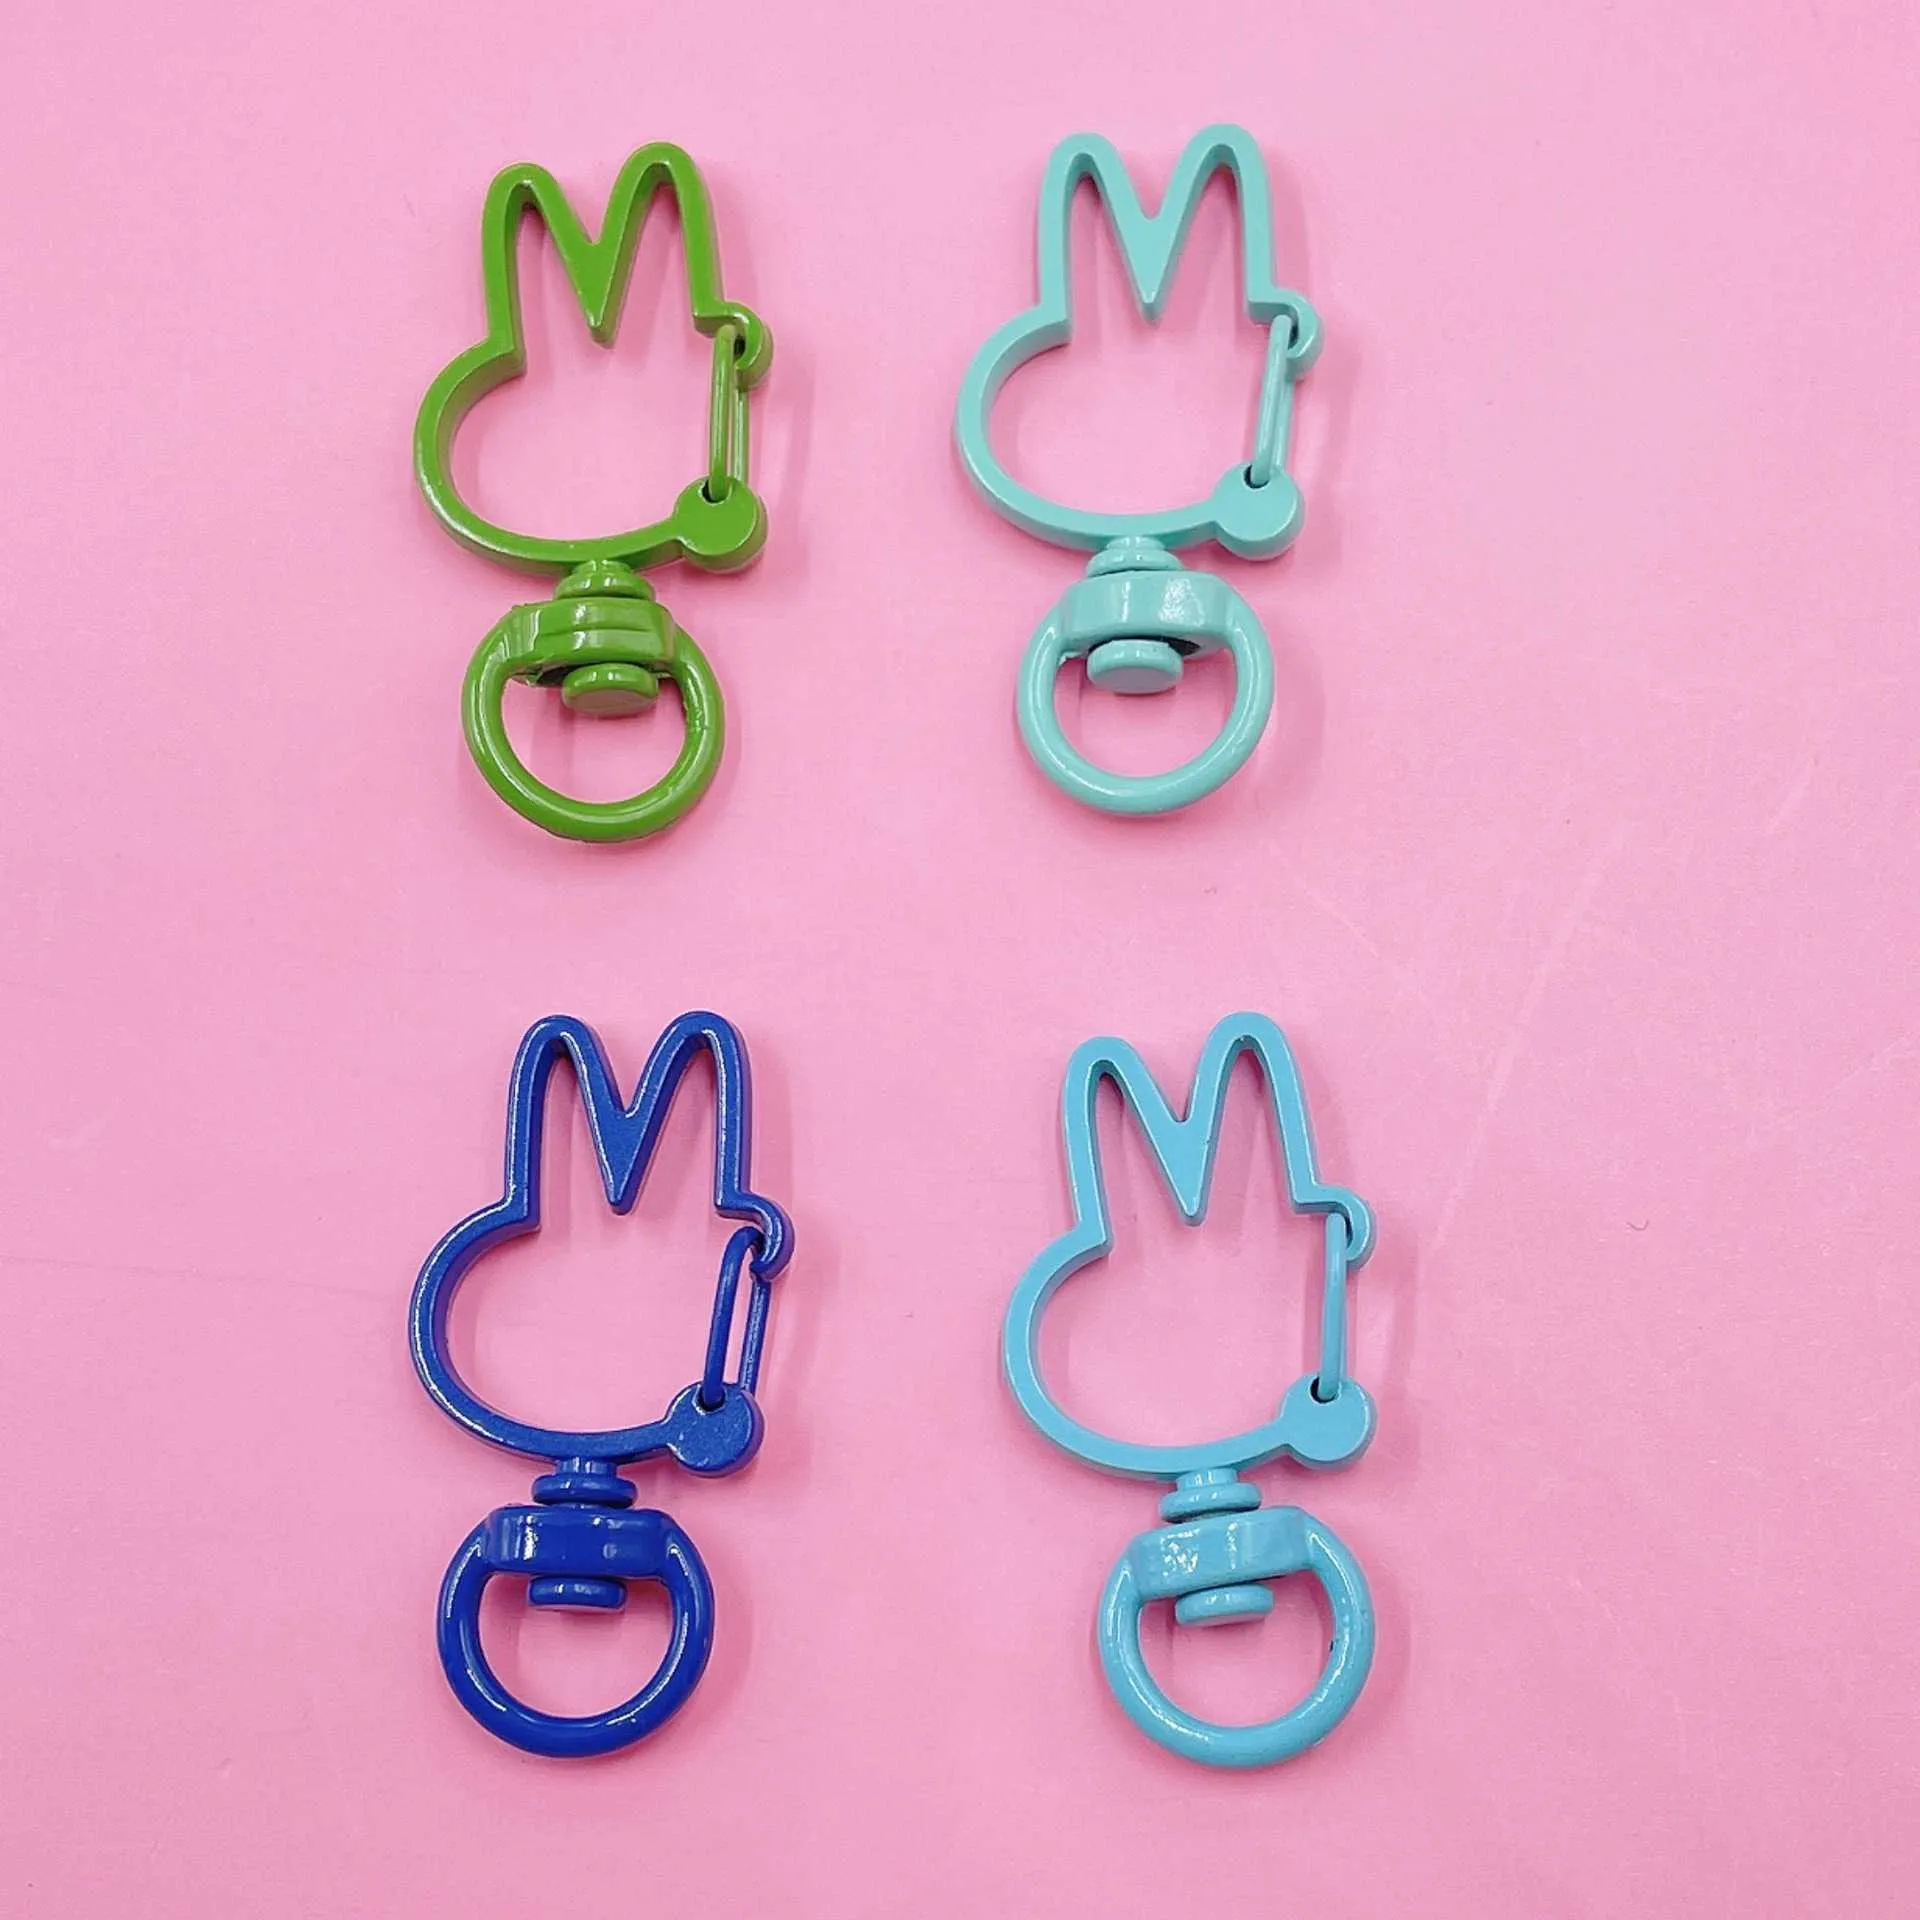 10 pièces en métal peint coloré 36x18mm joli lapin rotatif mousqueton connecteurs de porte-clés pour bricolage porte-clés fabrication de bijoux G1019